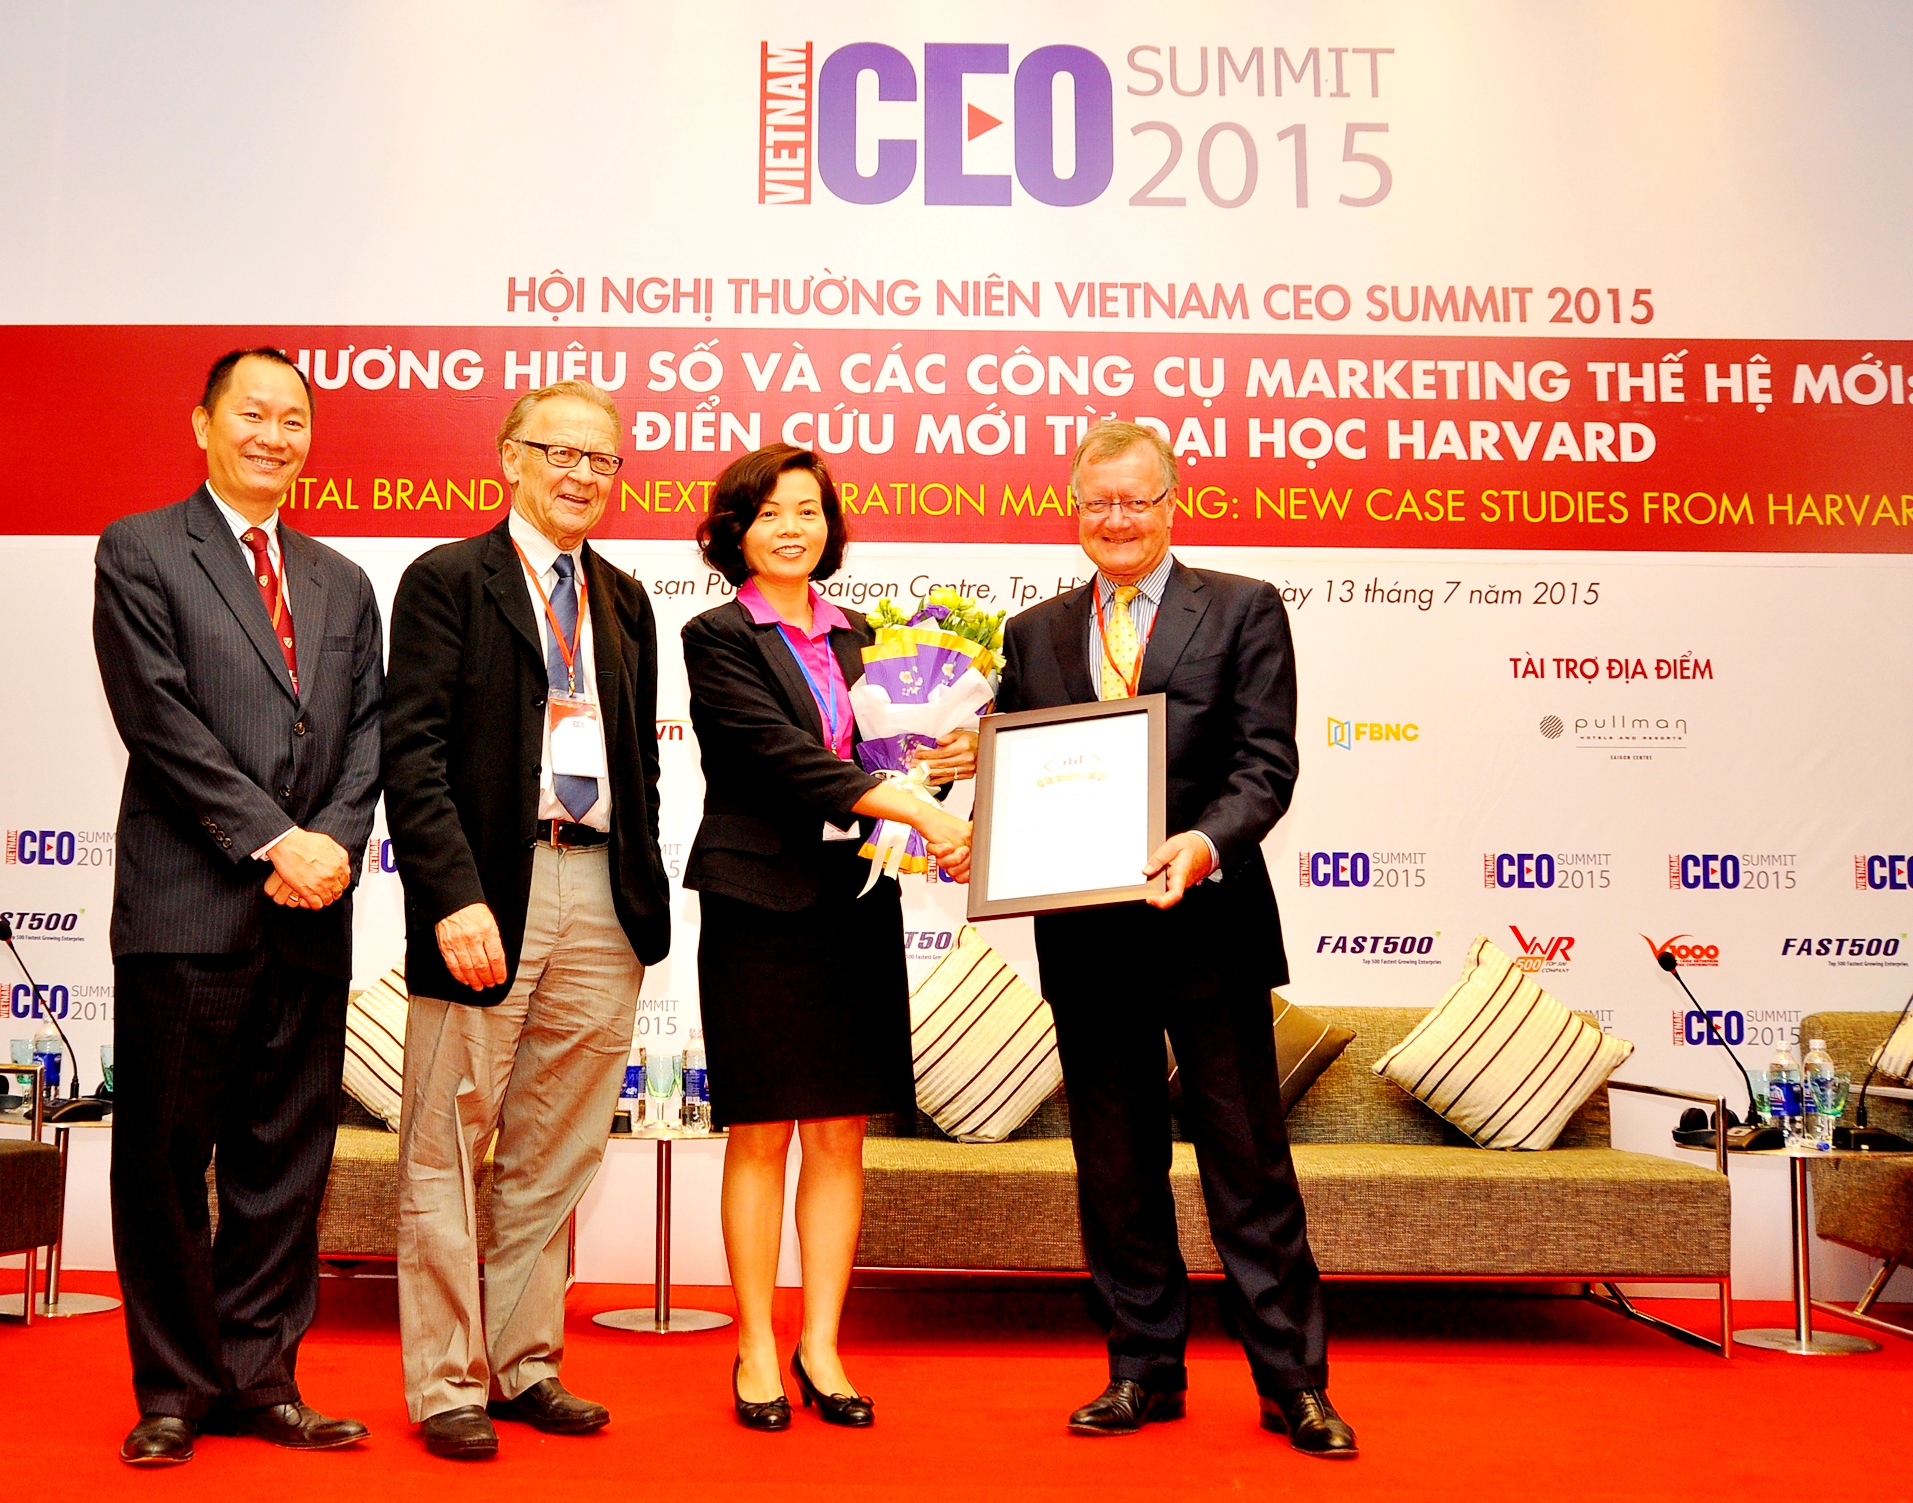 Bà Bùi Thị Hương, Giám Đốc Điều Hành Vinamilk đại diện công ty nhận giải thưởng doanh nghiệp đứng đầu Top 10 thương hiệu uy tín nhất trên truyền thông năm 2015